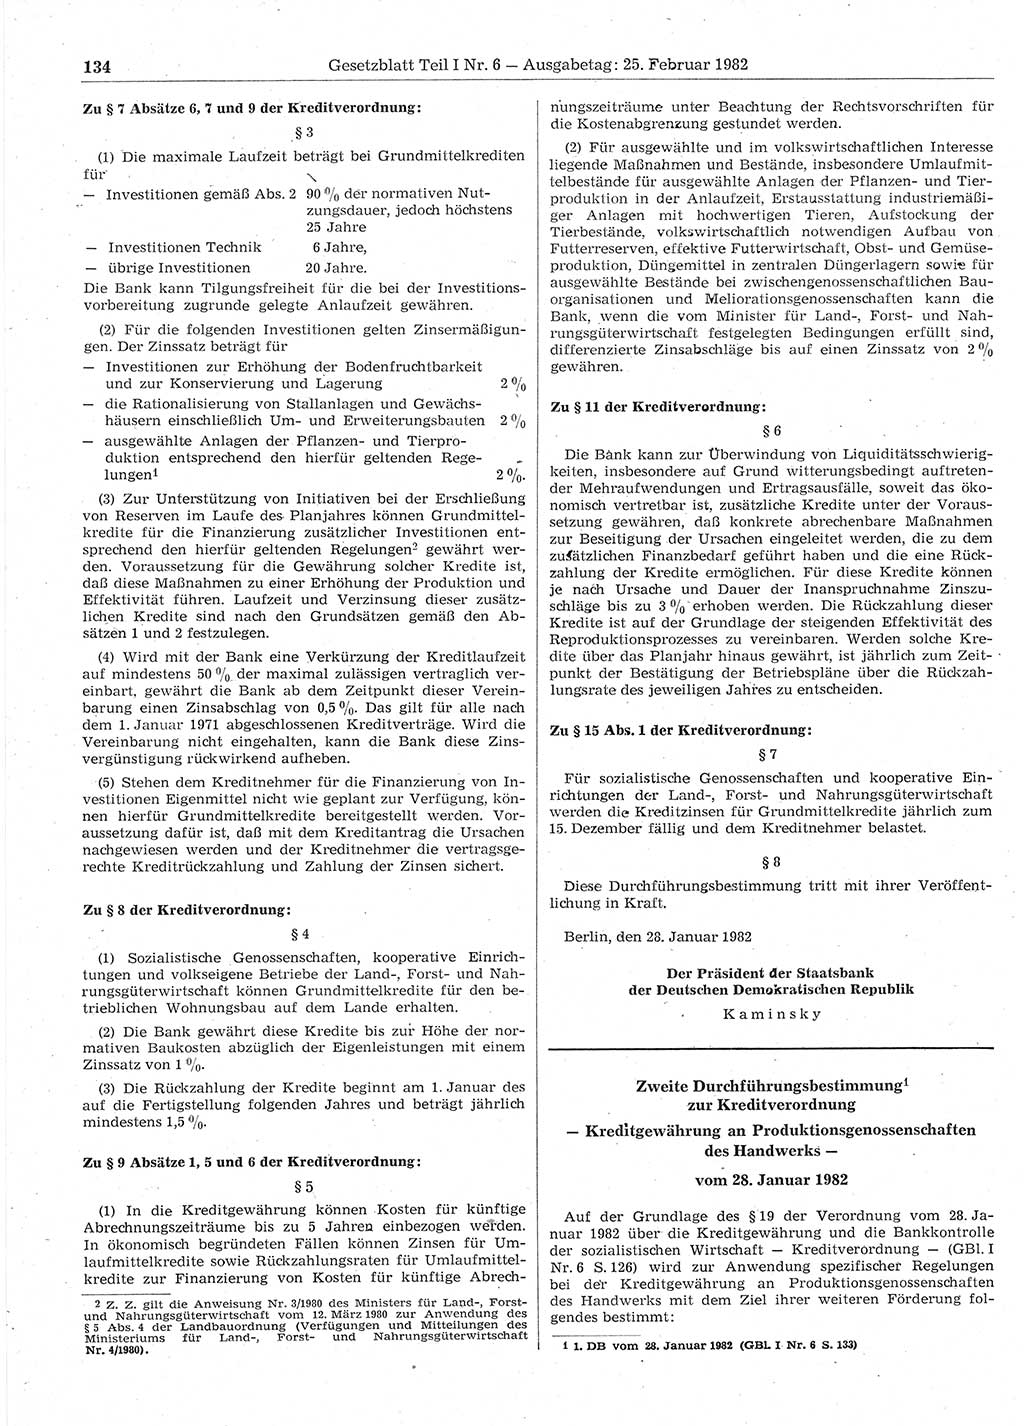 Gesetzblatt (GBl.) der Deutschen Demokratischen Republik (DDR) Teil Ⅰ 1982, Seite 134 (GBl. DDR Ⅰ 1982, S. 134)